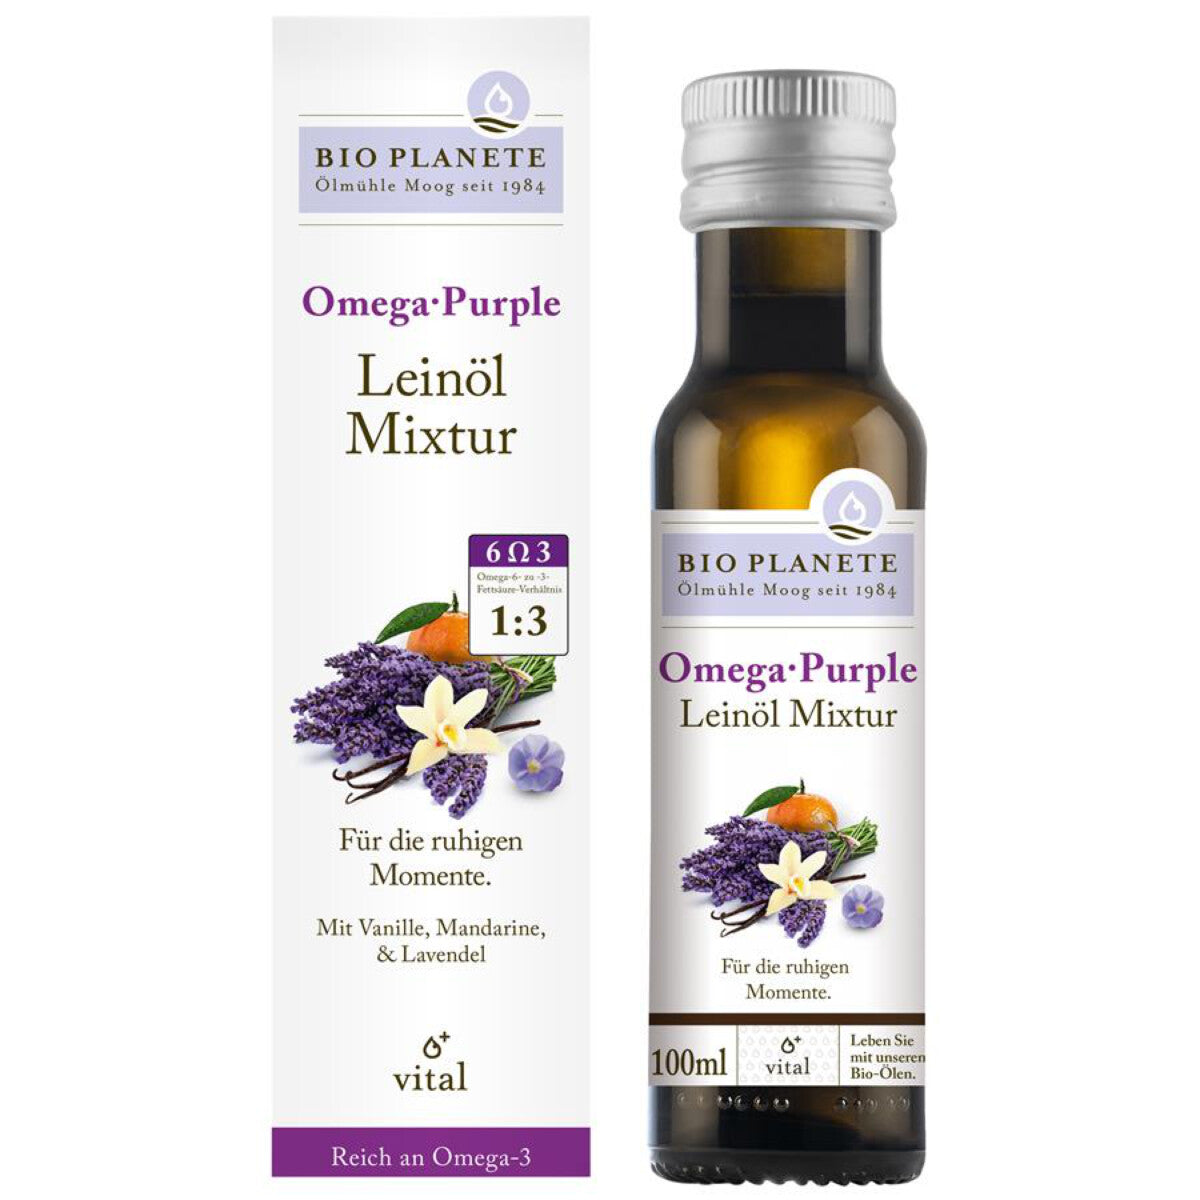 BIO PLANETE Omega Purple Leinöl Mixtur - 0,1 l